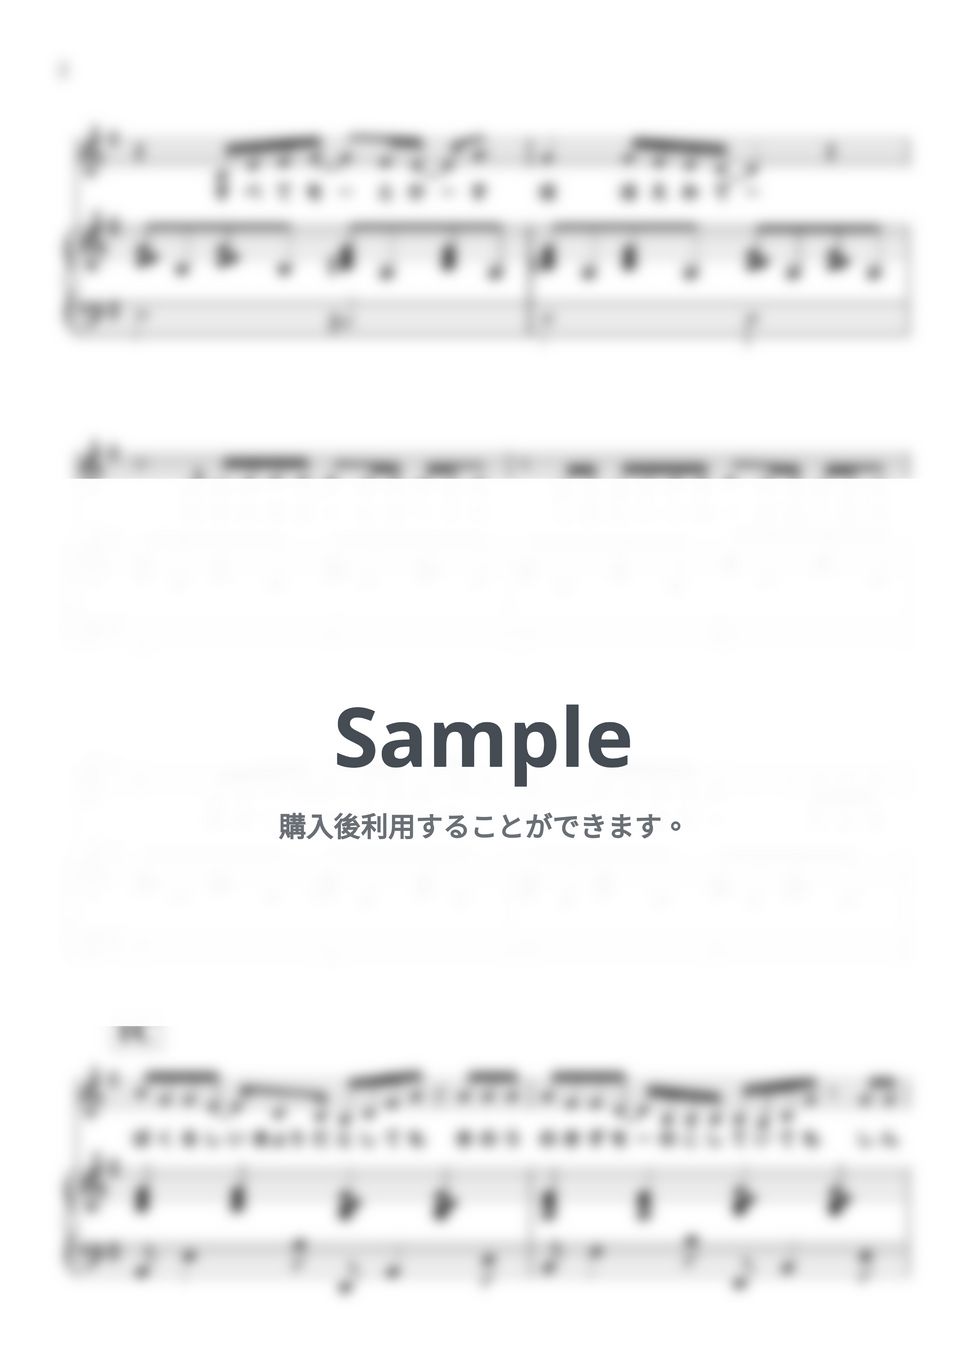 岡崎律子 - For フルーツバスケット (ピアノ弾き語り/『フルーツバスケット』) by 鈴木 歌穂【ピアノ弾き語り】